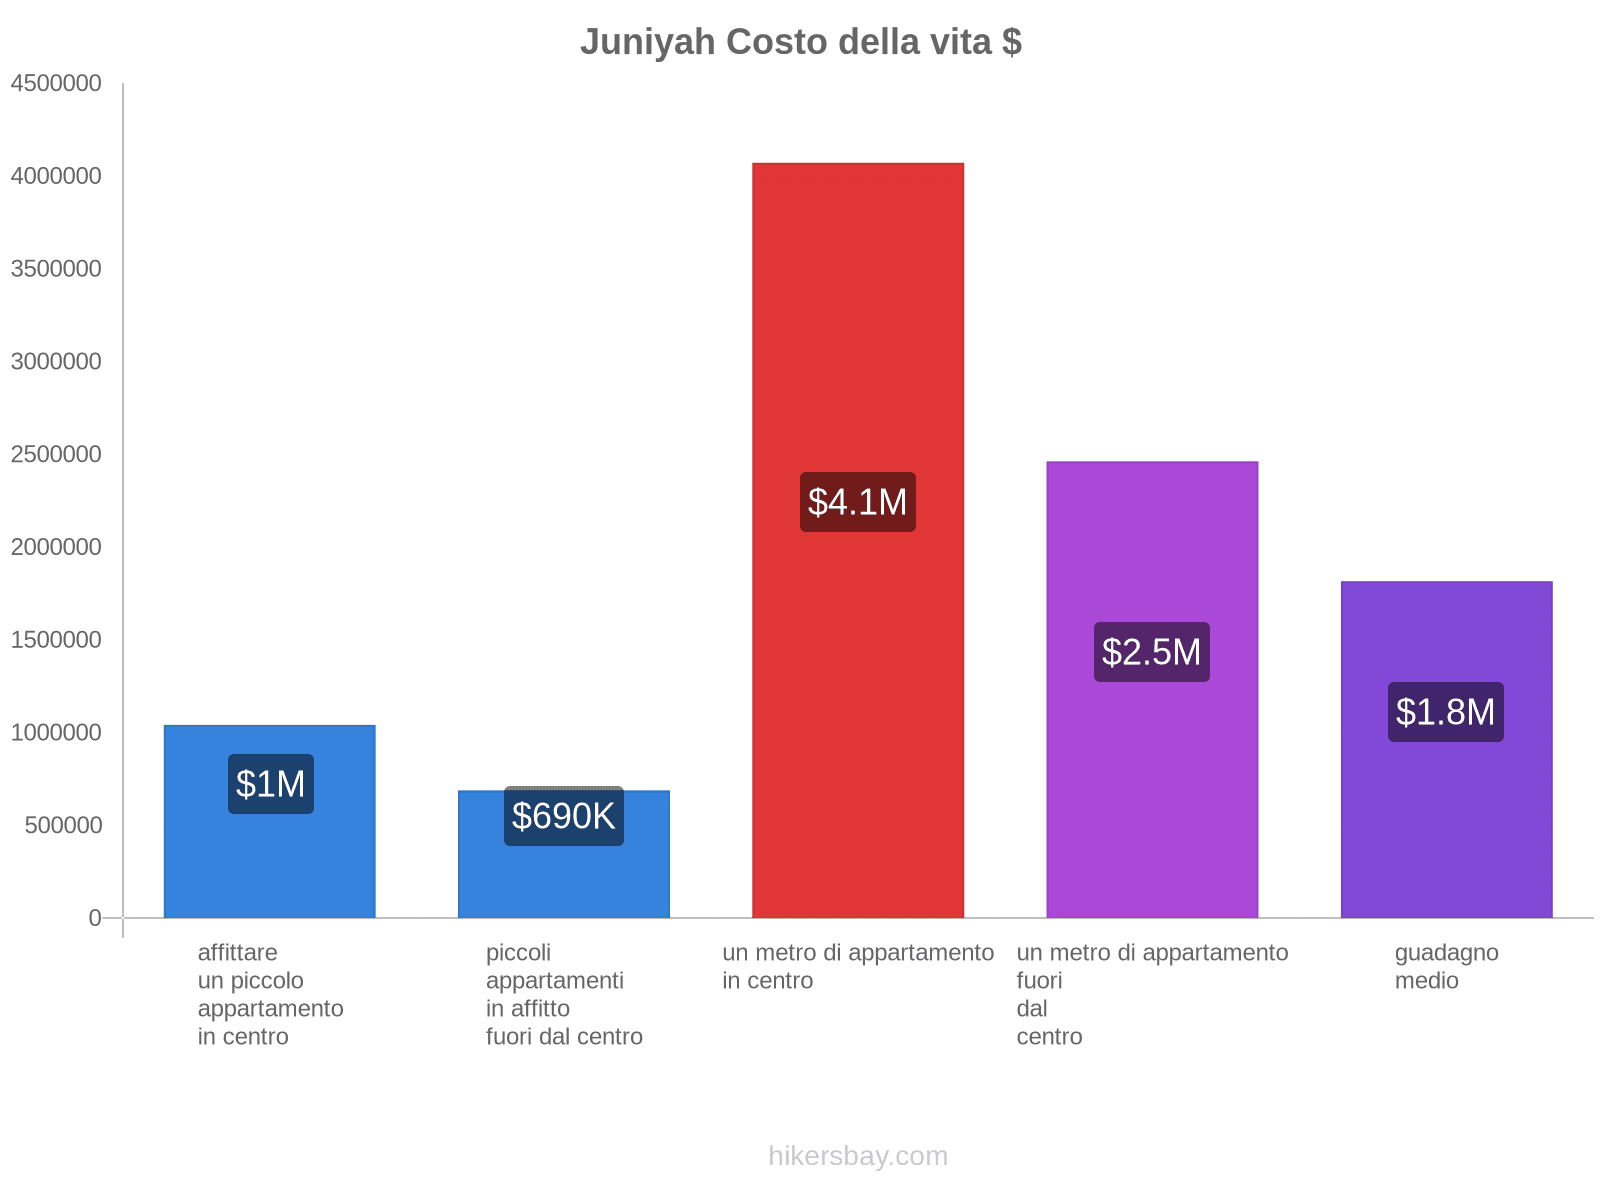 Juniyah costo della vita hikersbay.com